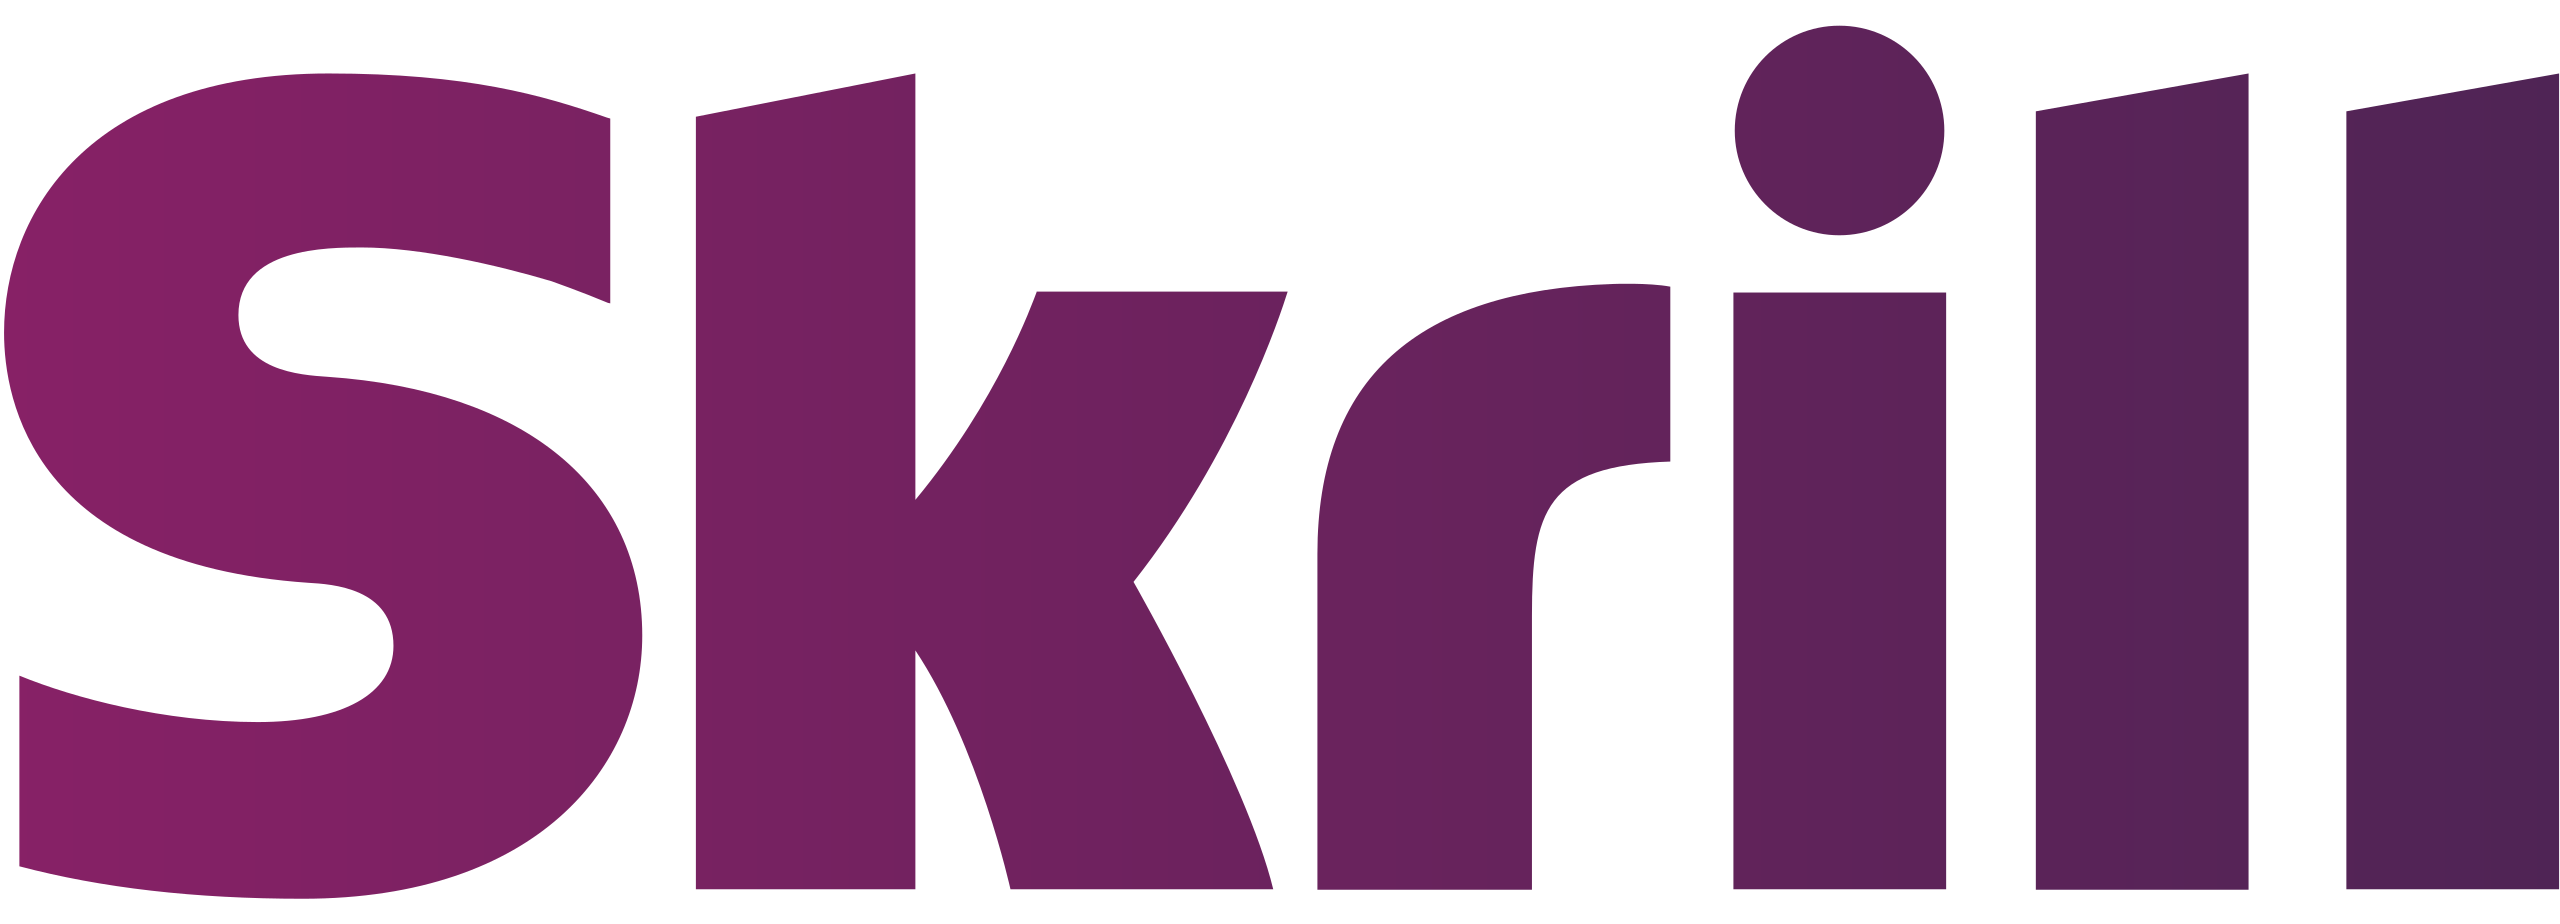 Skrill_logo.svg